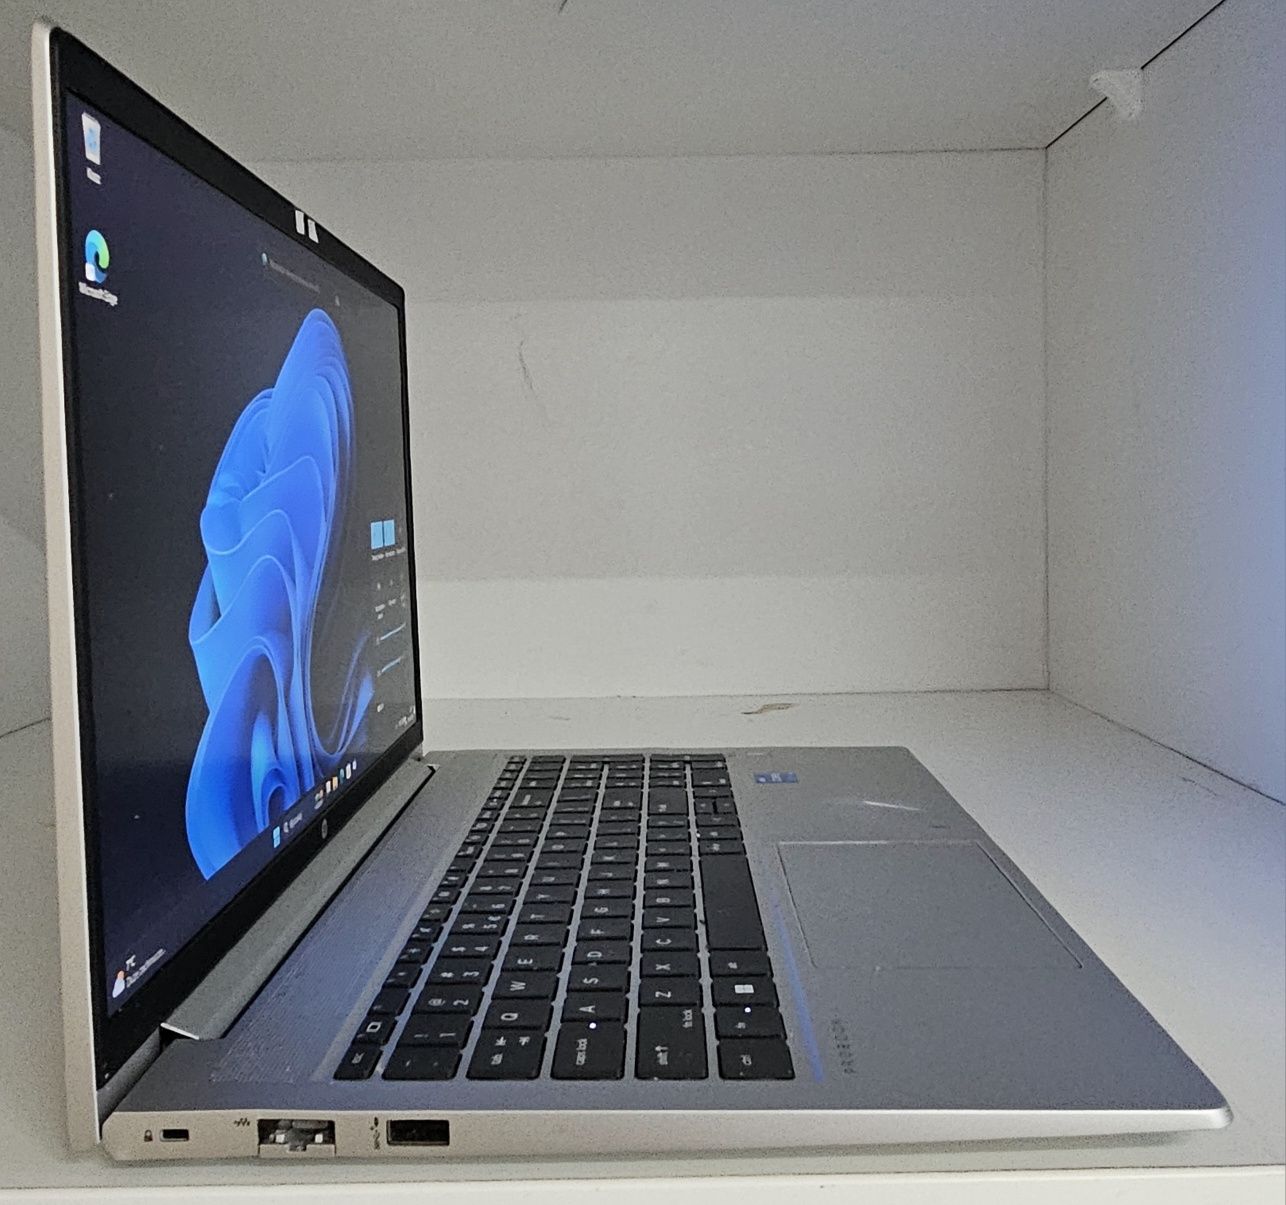 Laptop HP probook 450 G8 i5-1135,8GB,256GB SSD gwarancja.